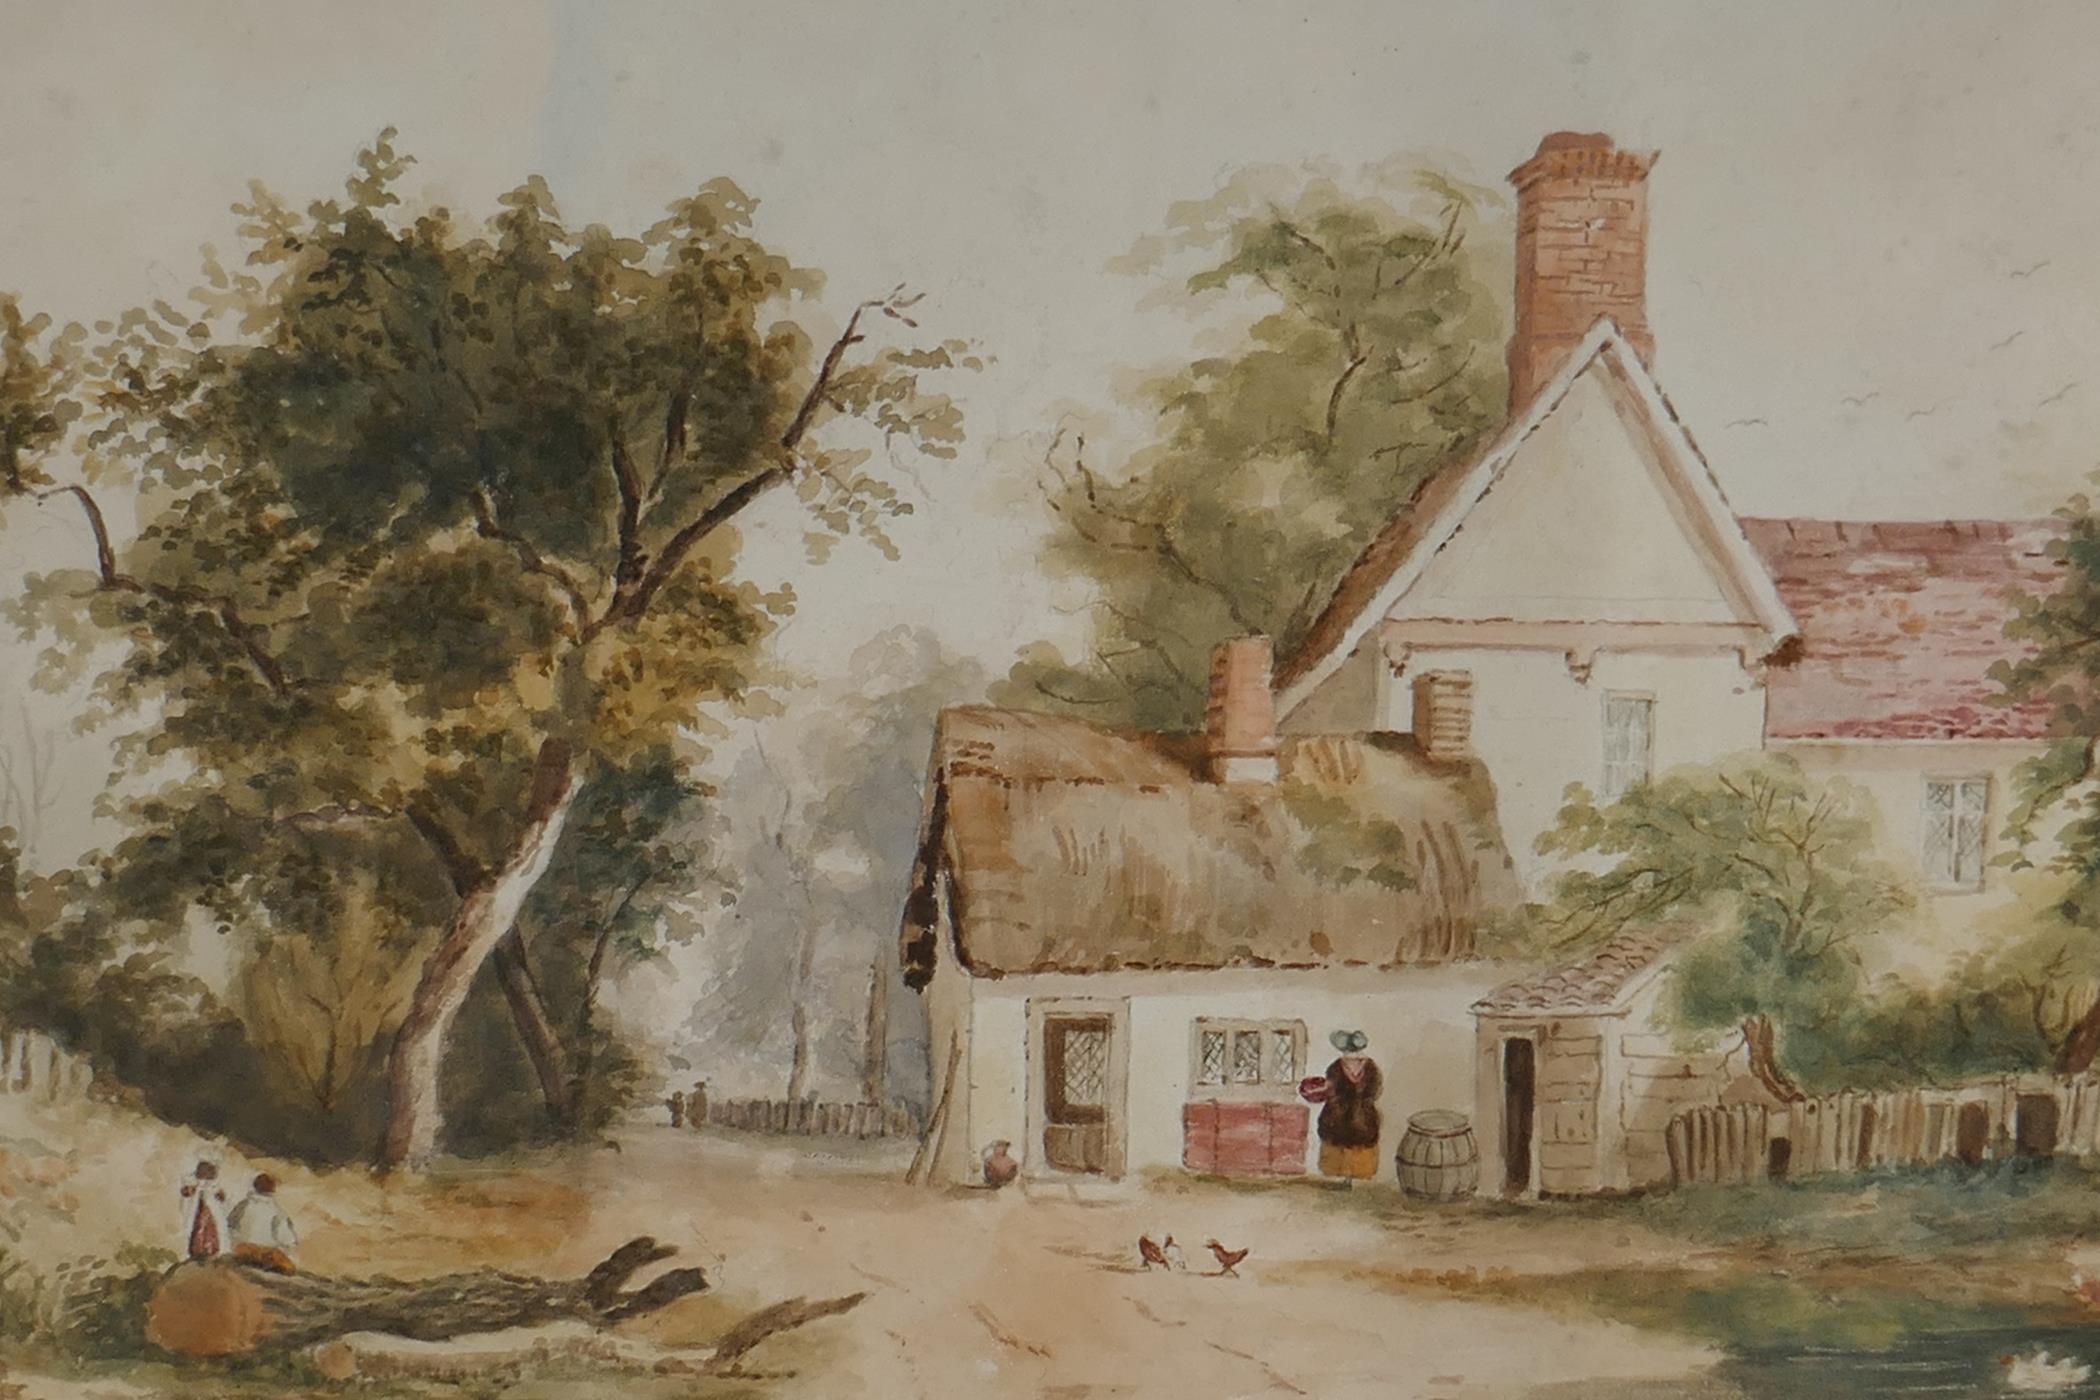 Farmhouse by a country lane, C19th naive watercolour, 15" x 9"